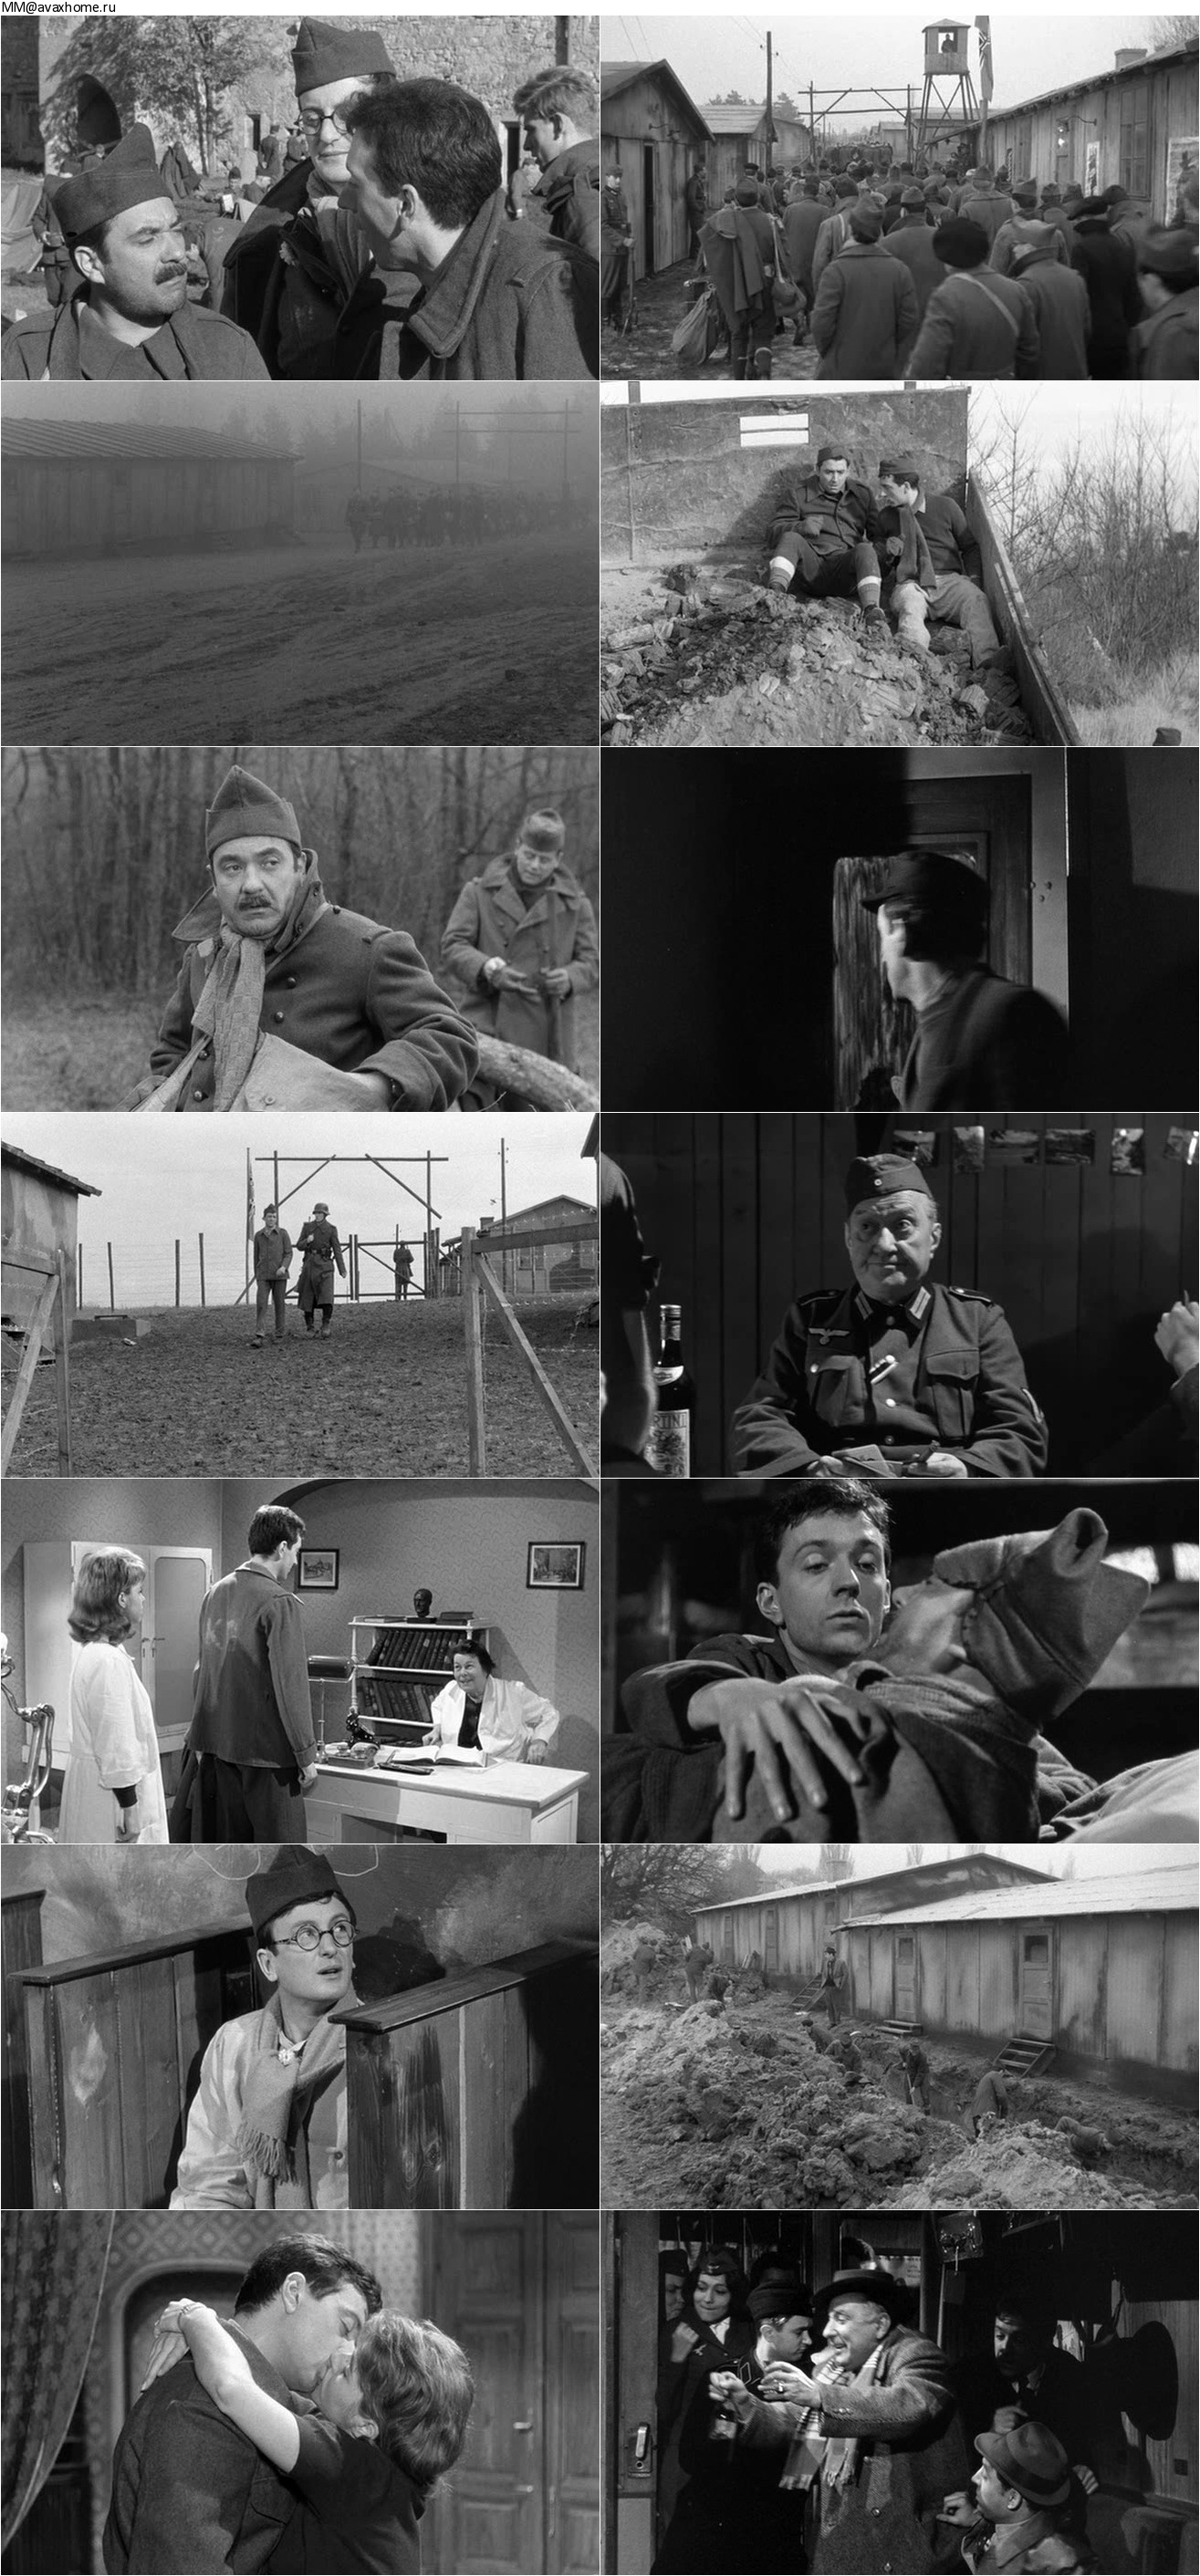 The Elusive Corporal (1962) Le caporal épinglé